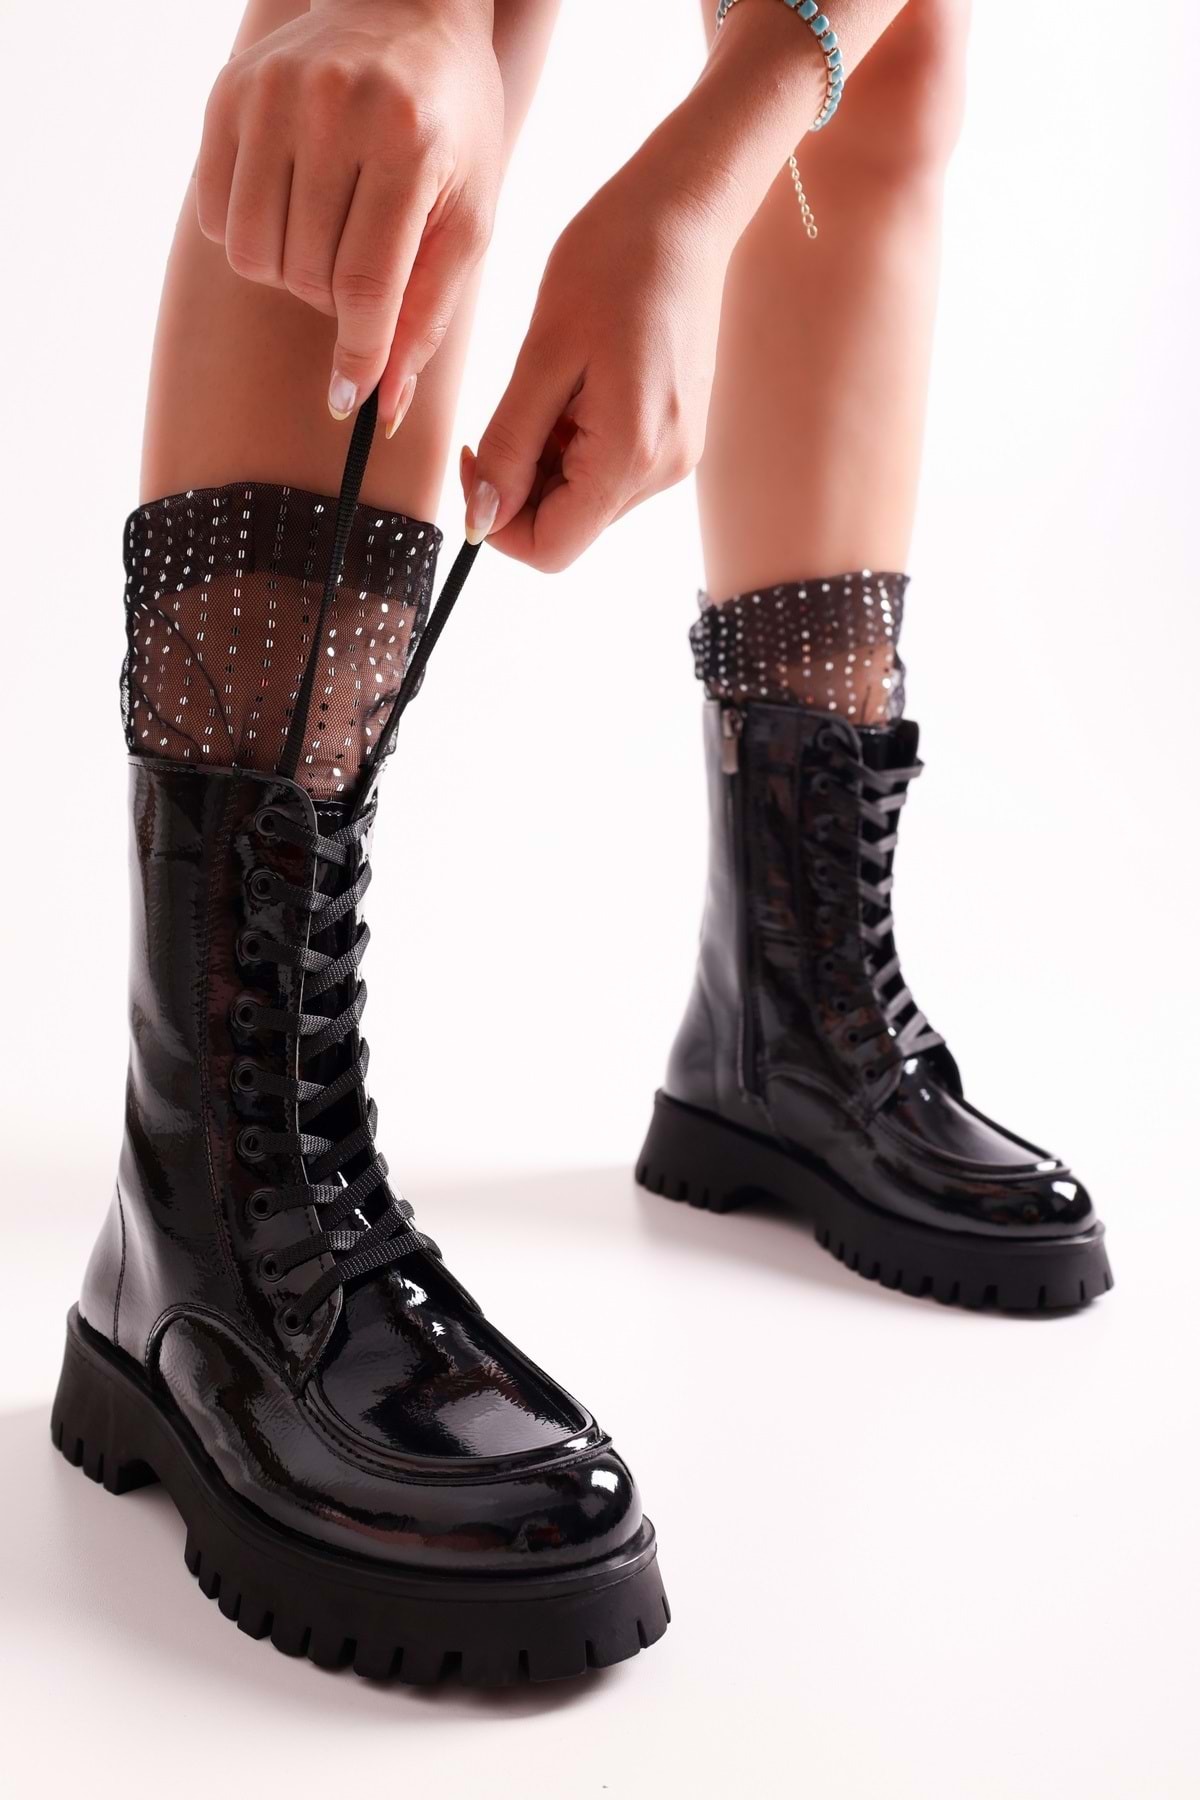 Shoeberry Women's Colette Black Wrinkled Patent Leather Boots Boots Black Wrinkled Patent Leather.